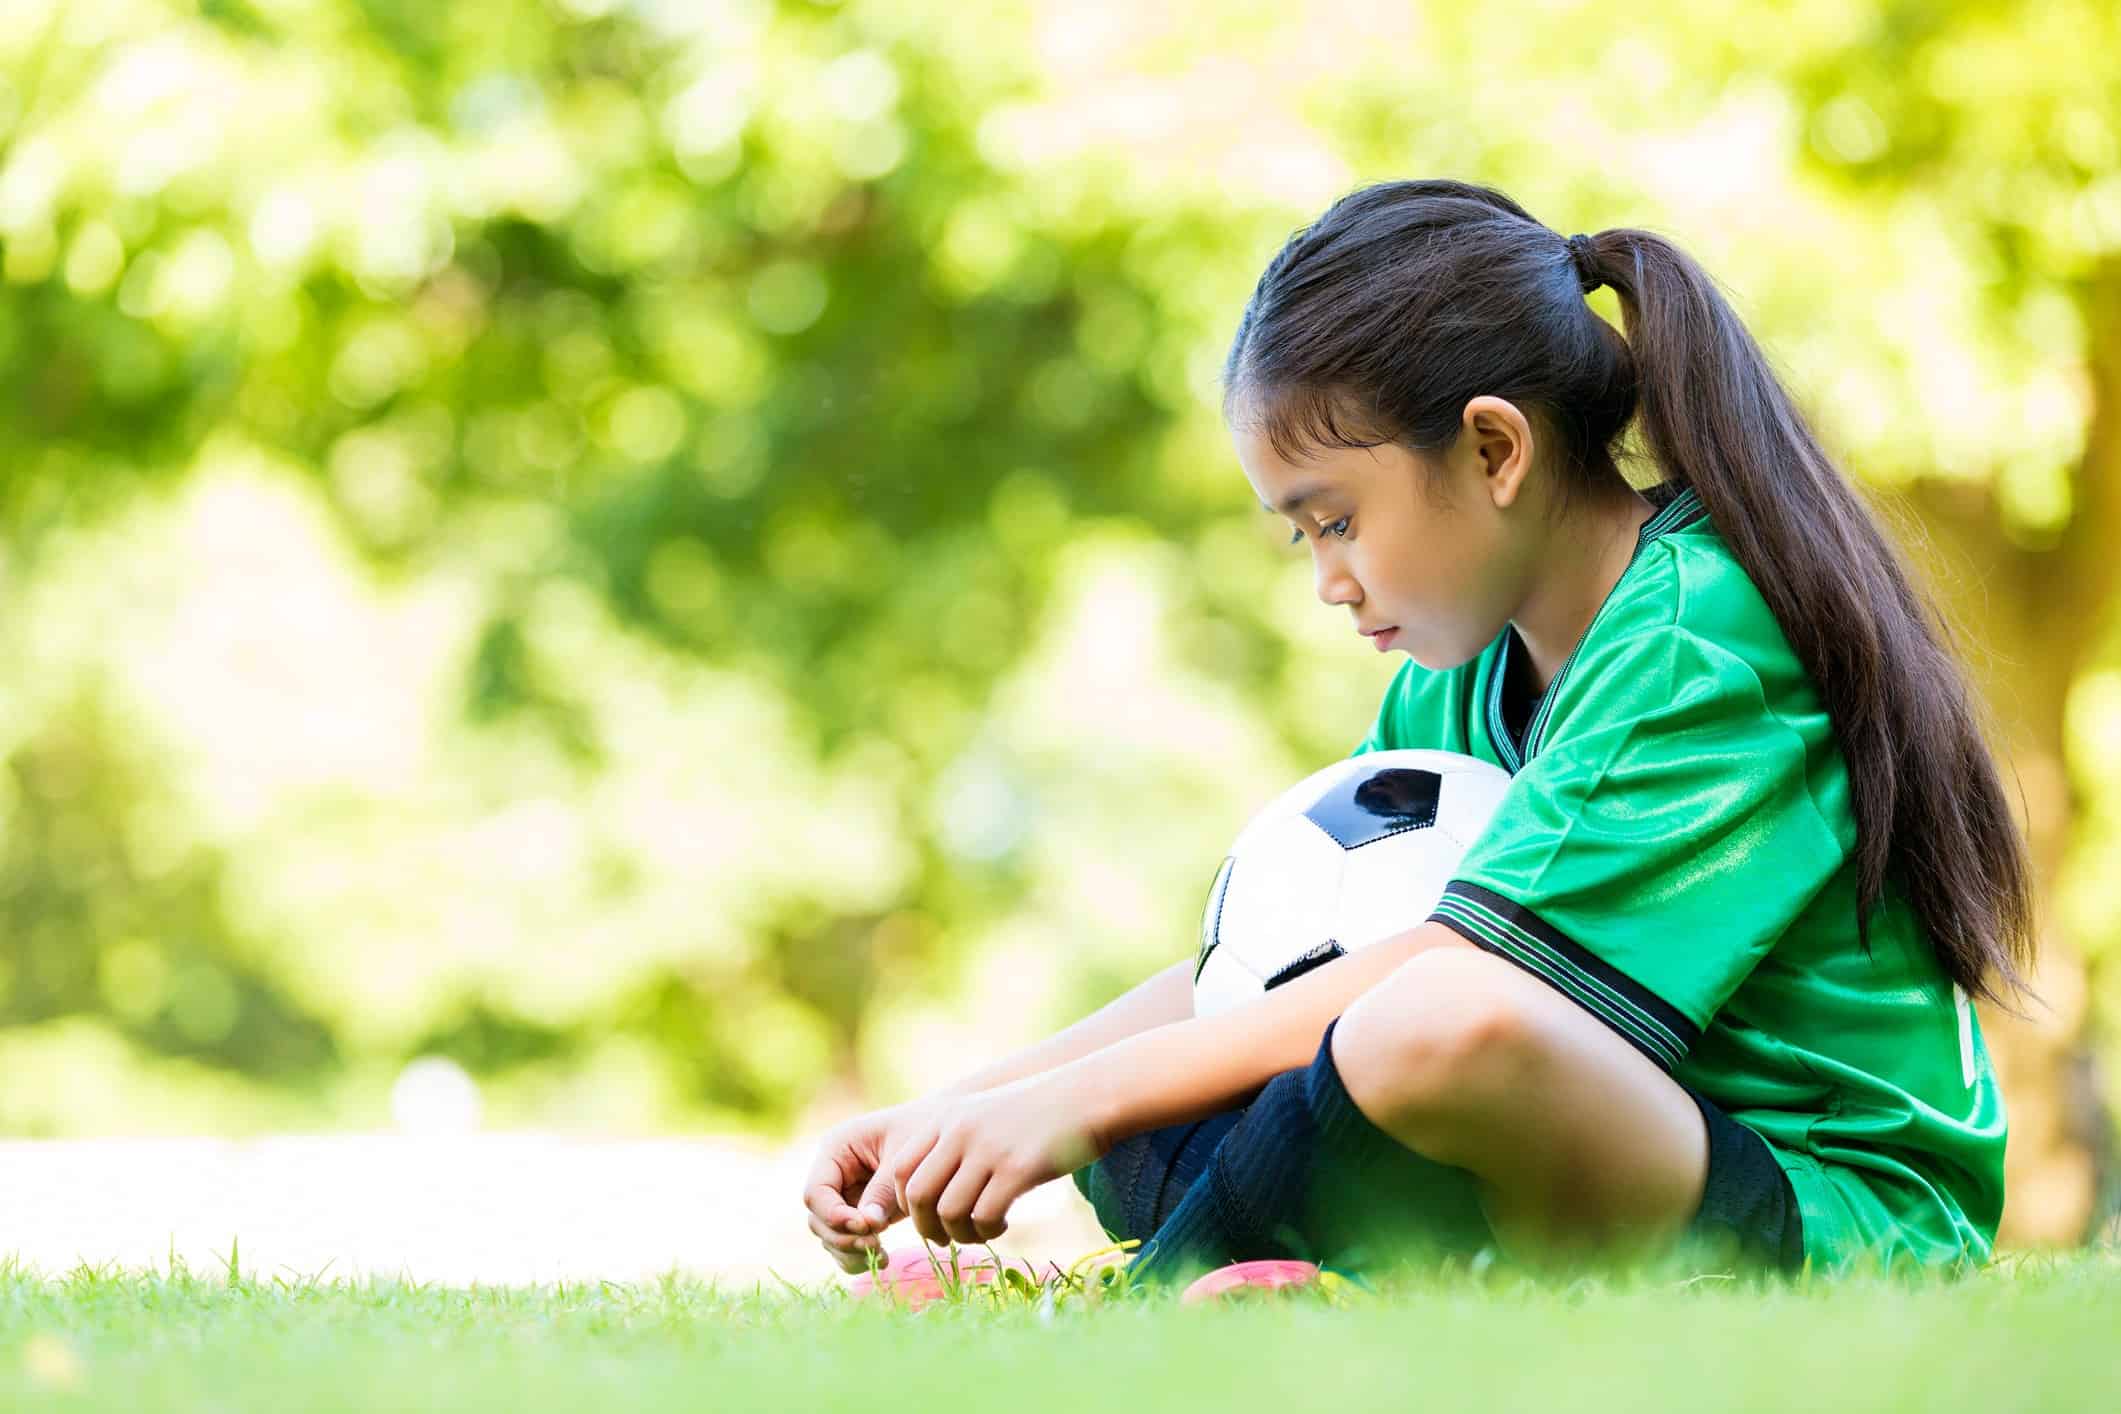 menina sentada em quadra de futebol segurando bola pensando em como lidar com a frustração